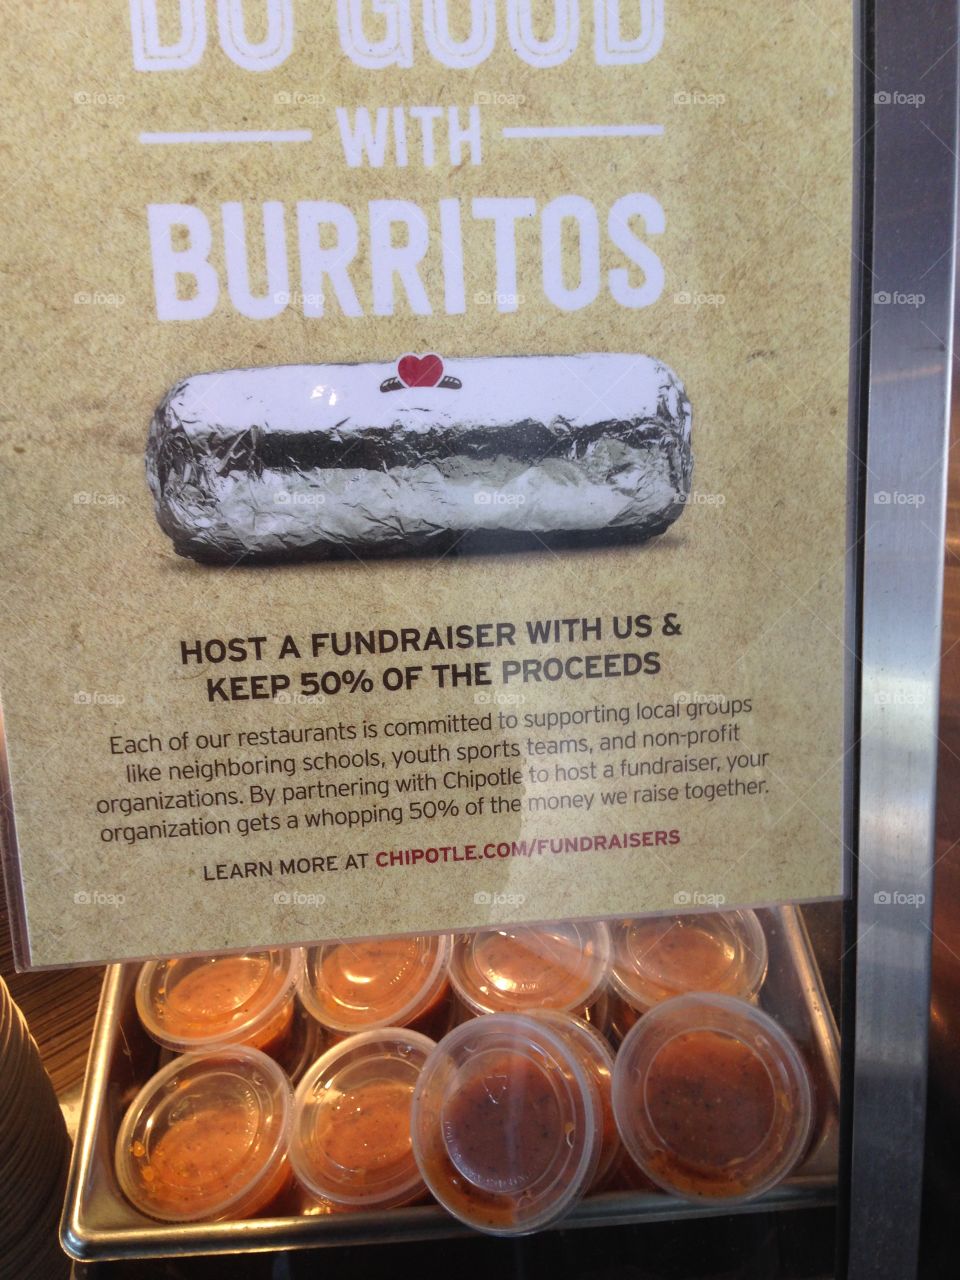 Burrito Fund!